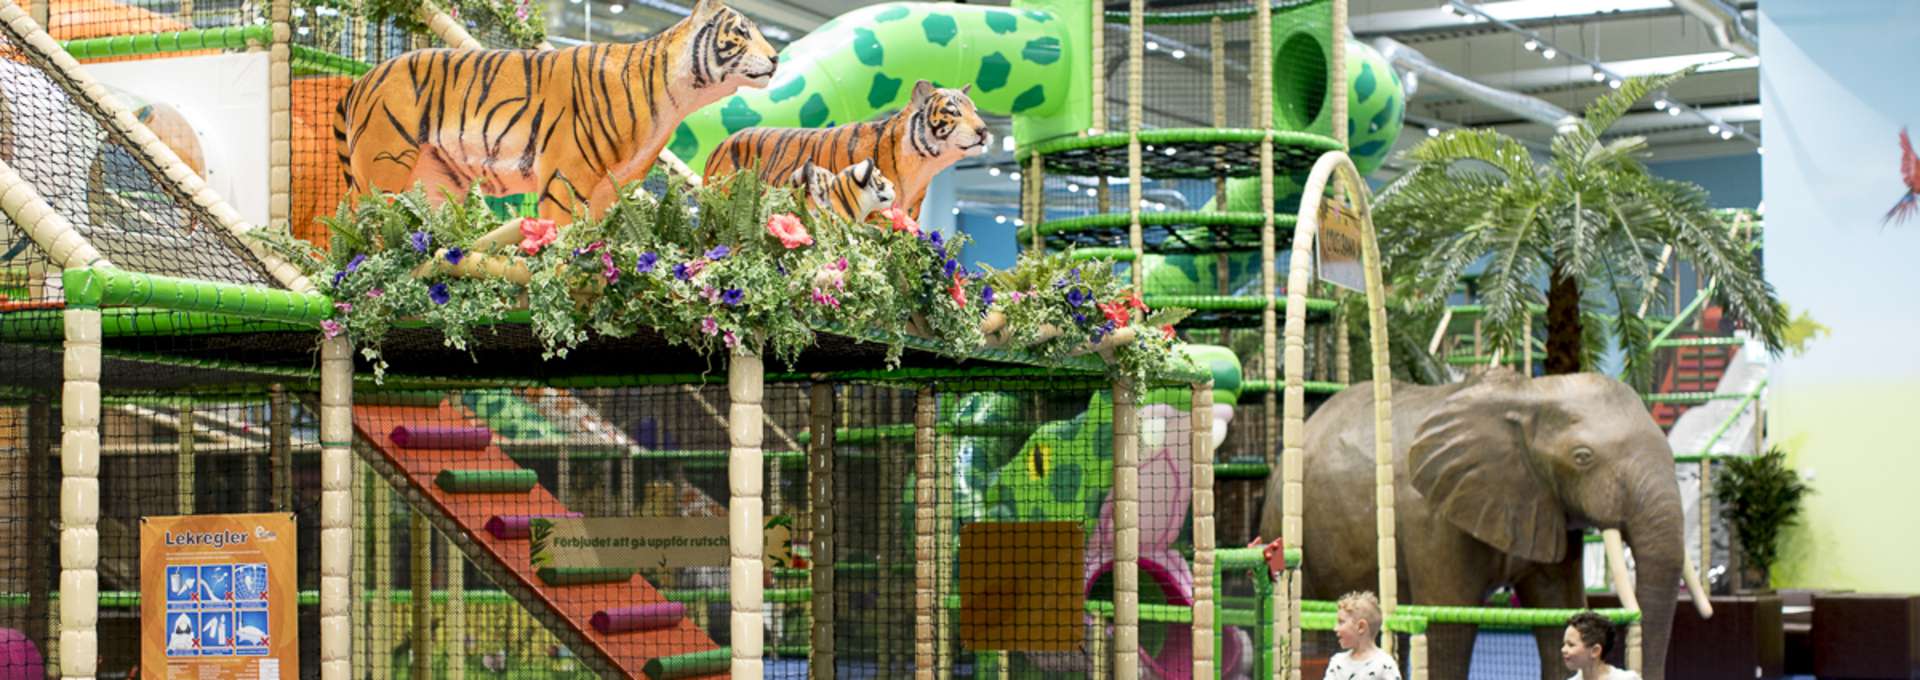 Två små pojkar springer och leker på Leos Lekland. På bilden syns stora färgglada klätterställningar och två tigrar och en stor elefant i plast.